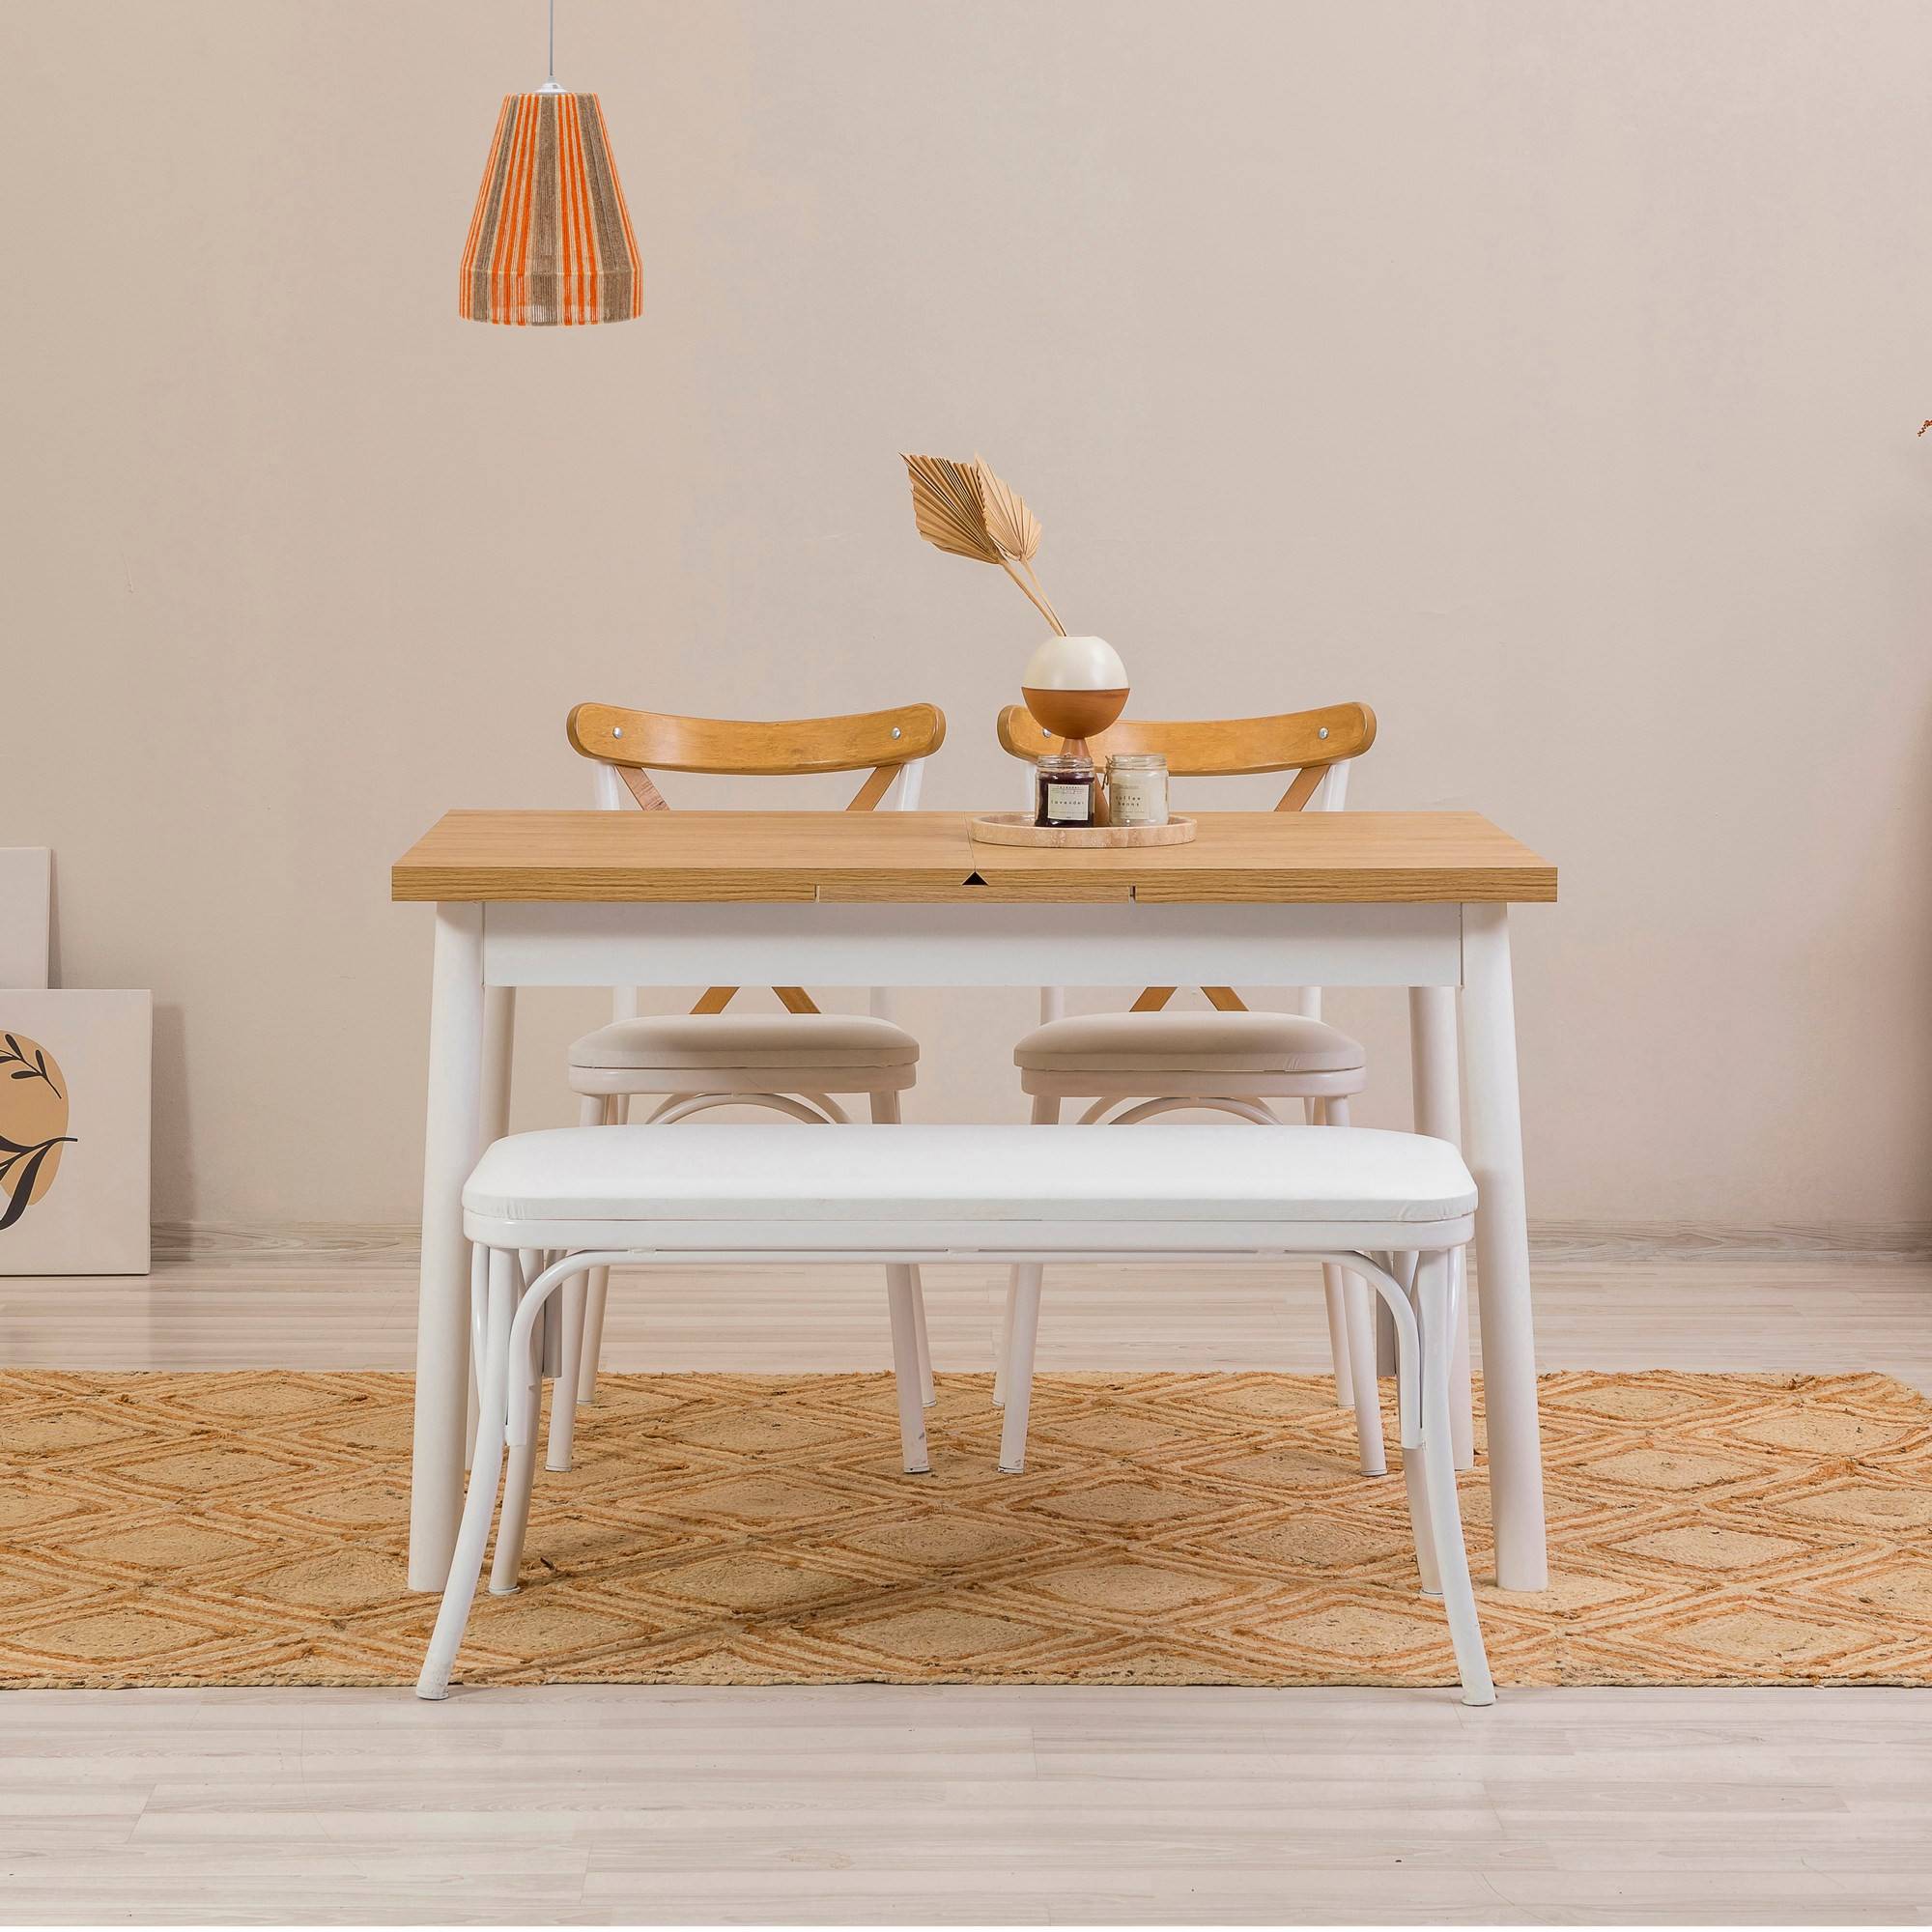 Set di 2 sedie, 1 panca e 1 tavolo allungabile Iridus bianco e legno chiaro